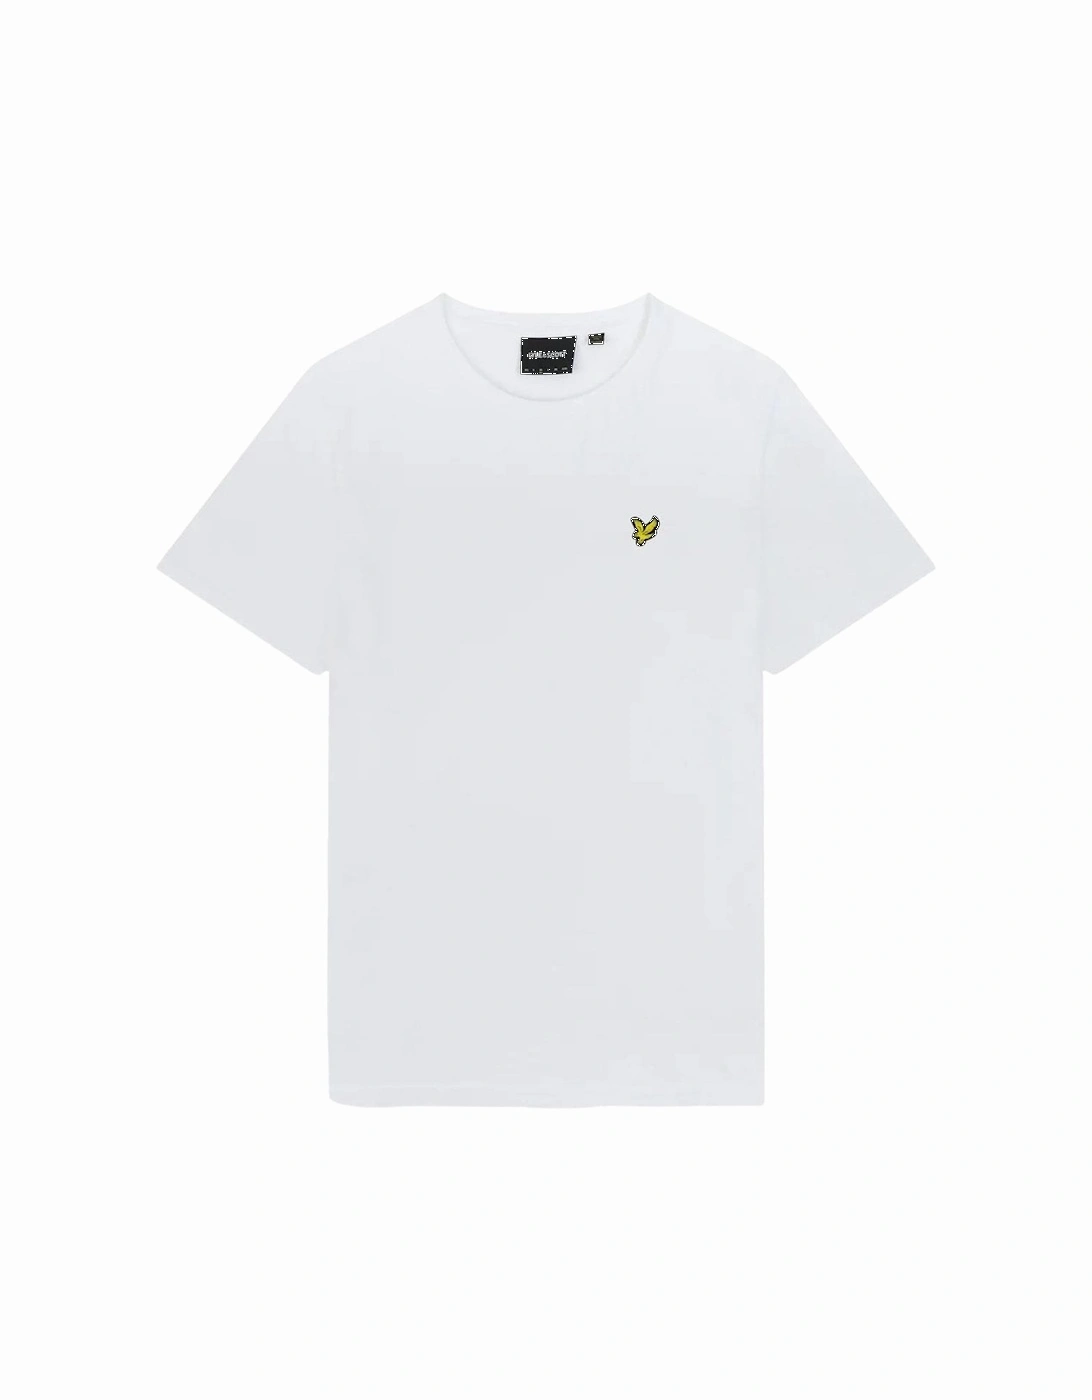 Lyle & Scott Plain T-Shirt - White, 9 of 8